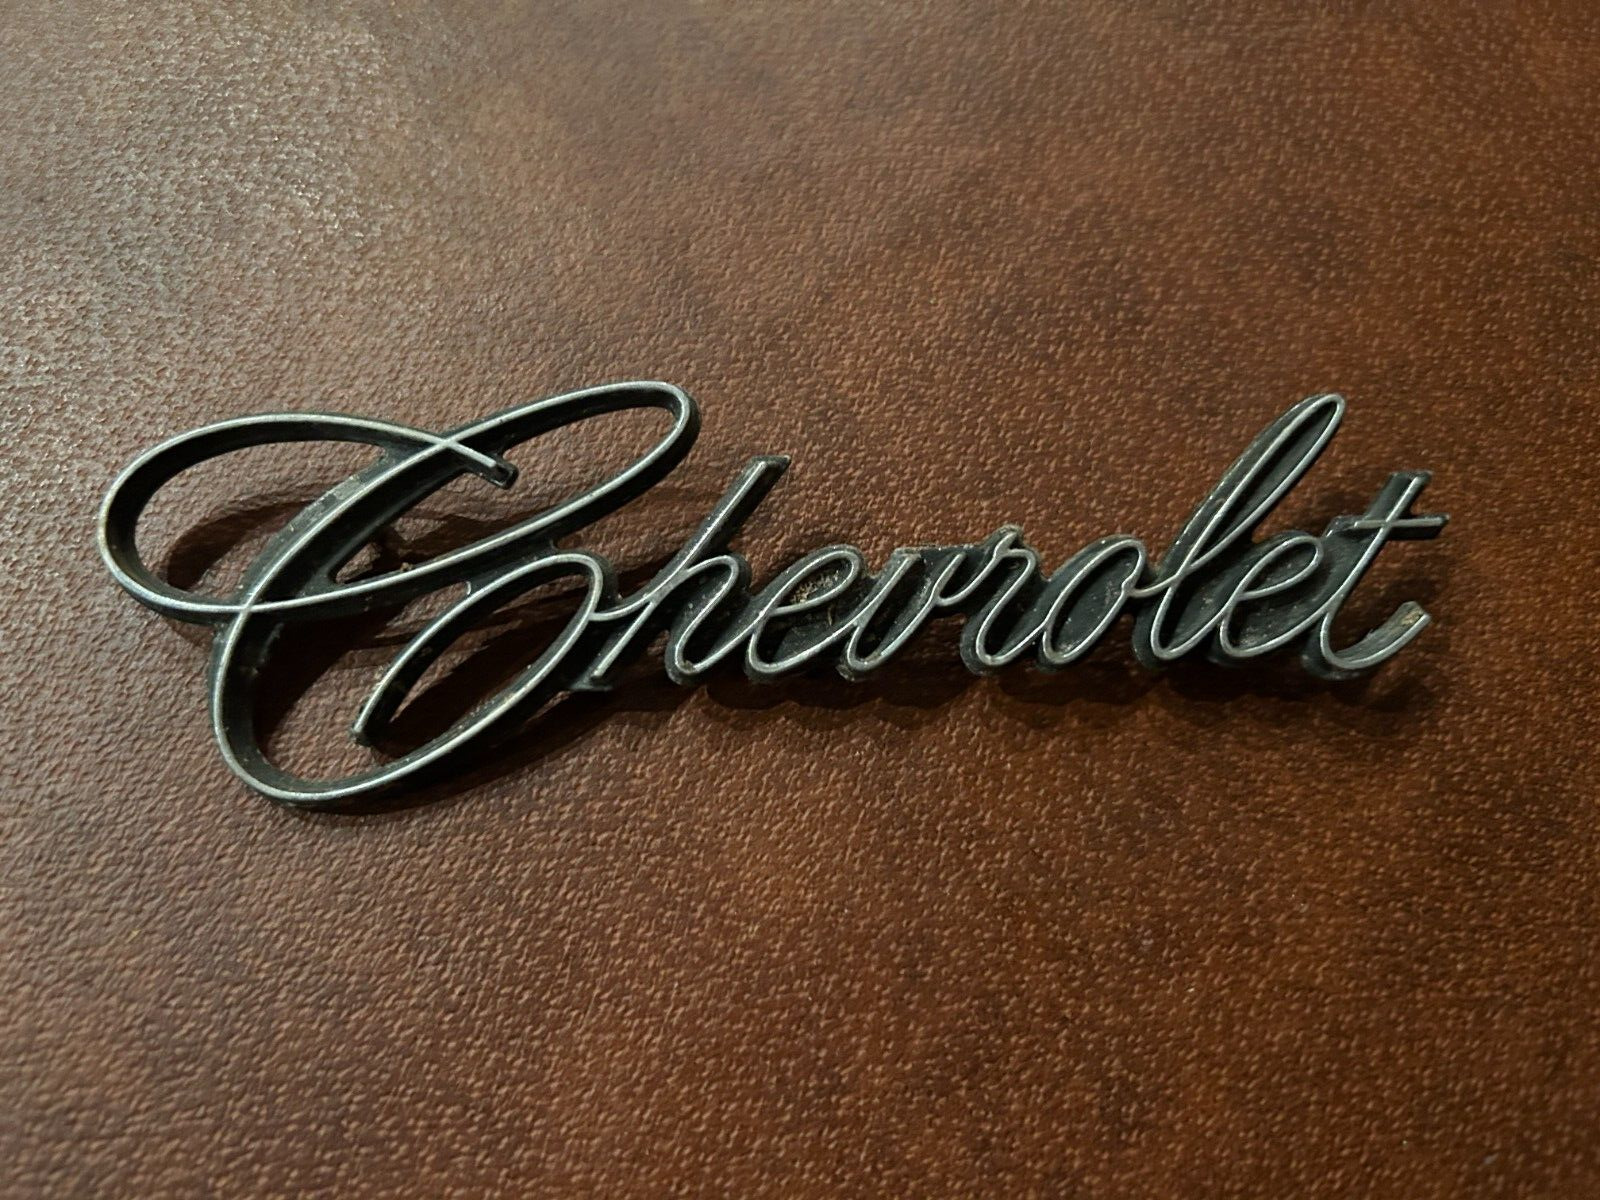 Chevrolet Script Emblem/Name Badge 1969-76 Logo OEM Original Vintage